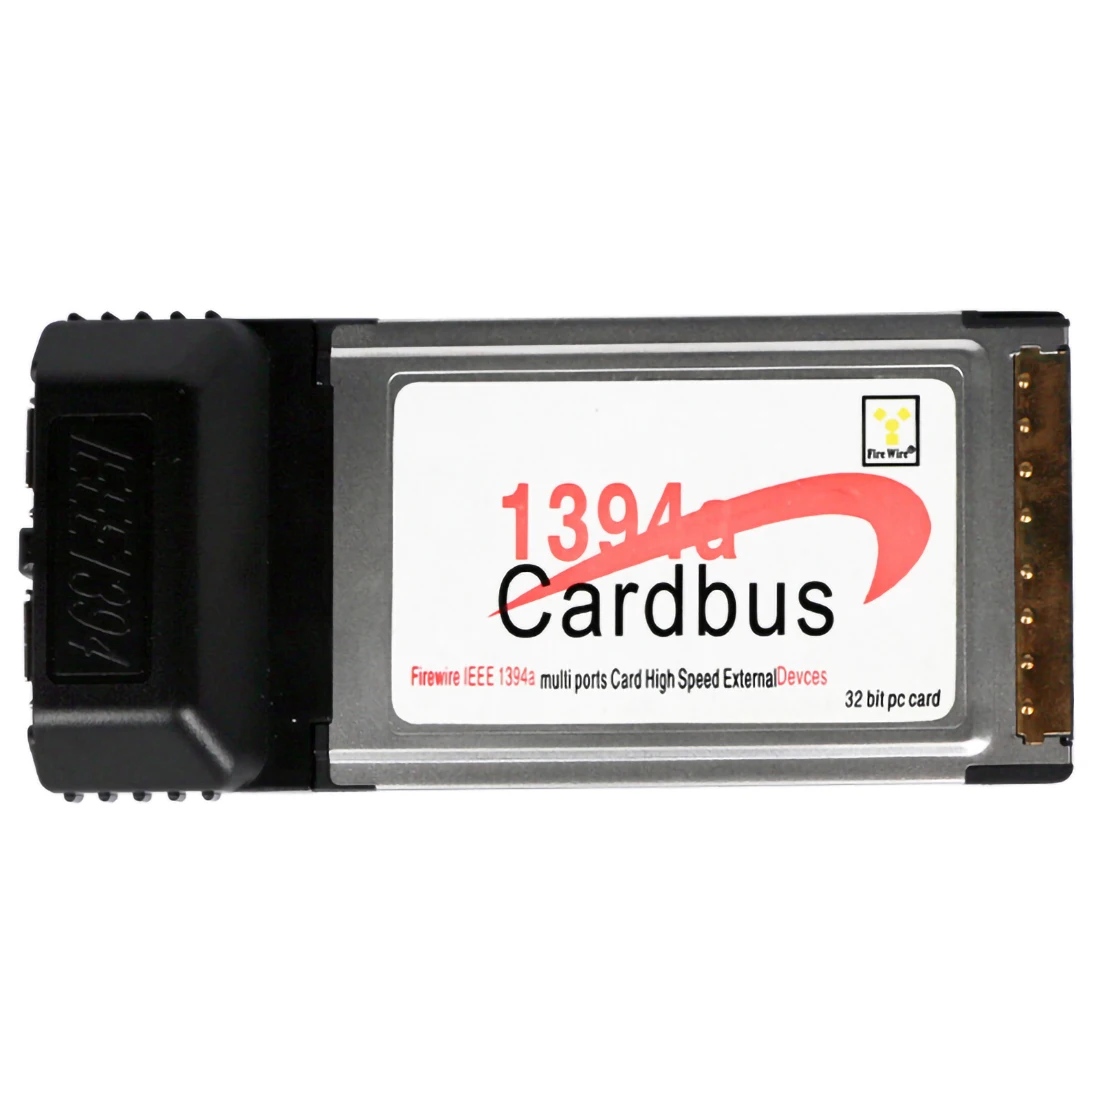 2 Порты и разъёмы 6Pin 1394A IEEE для FireWire 1394 CardBus карты 54 мм для PCMCIA цифровой Камера DV видеокамеры жестких дисков портативных ПК